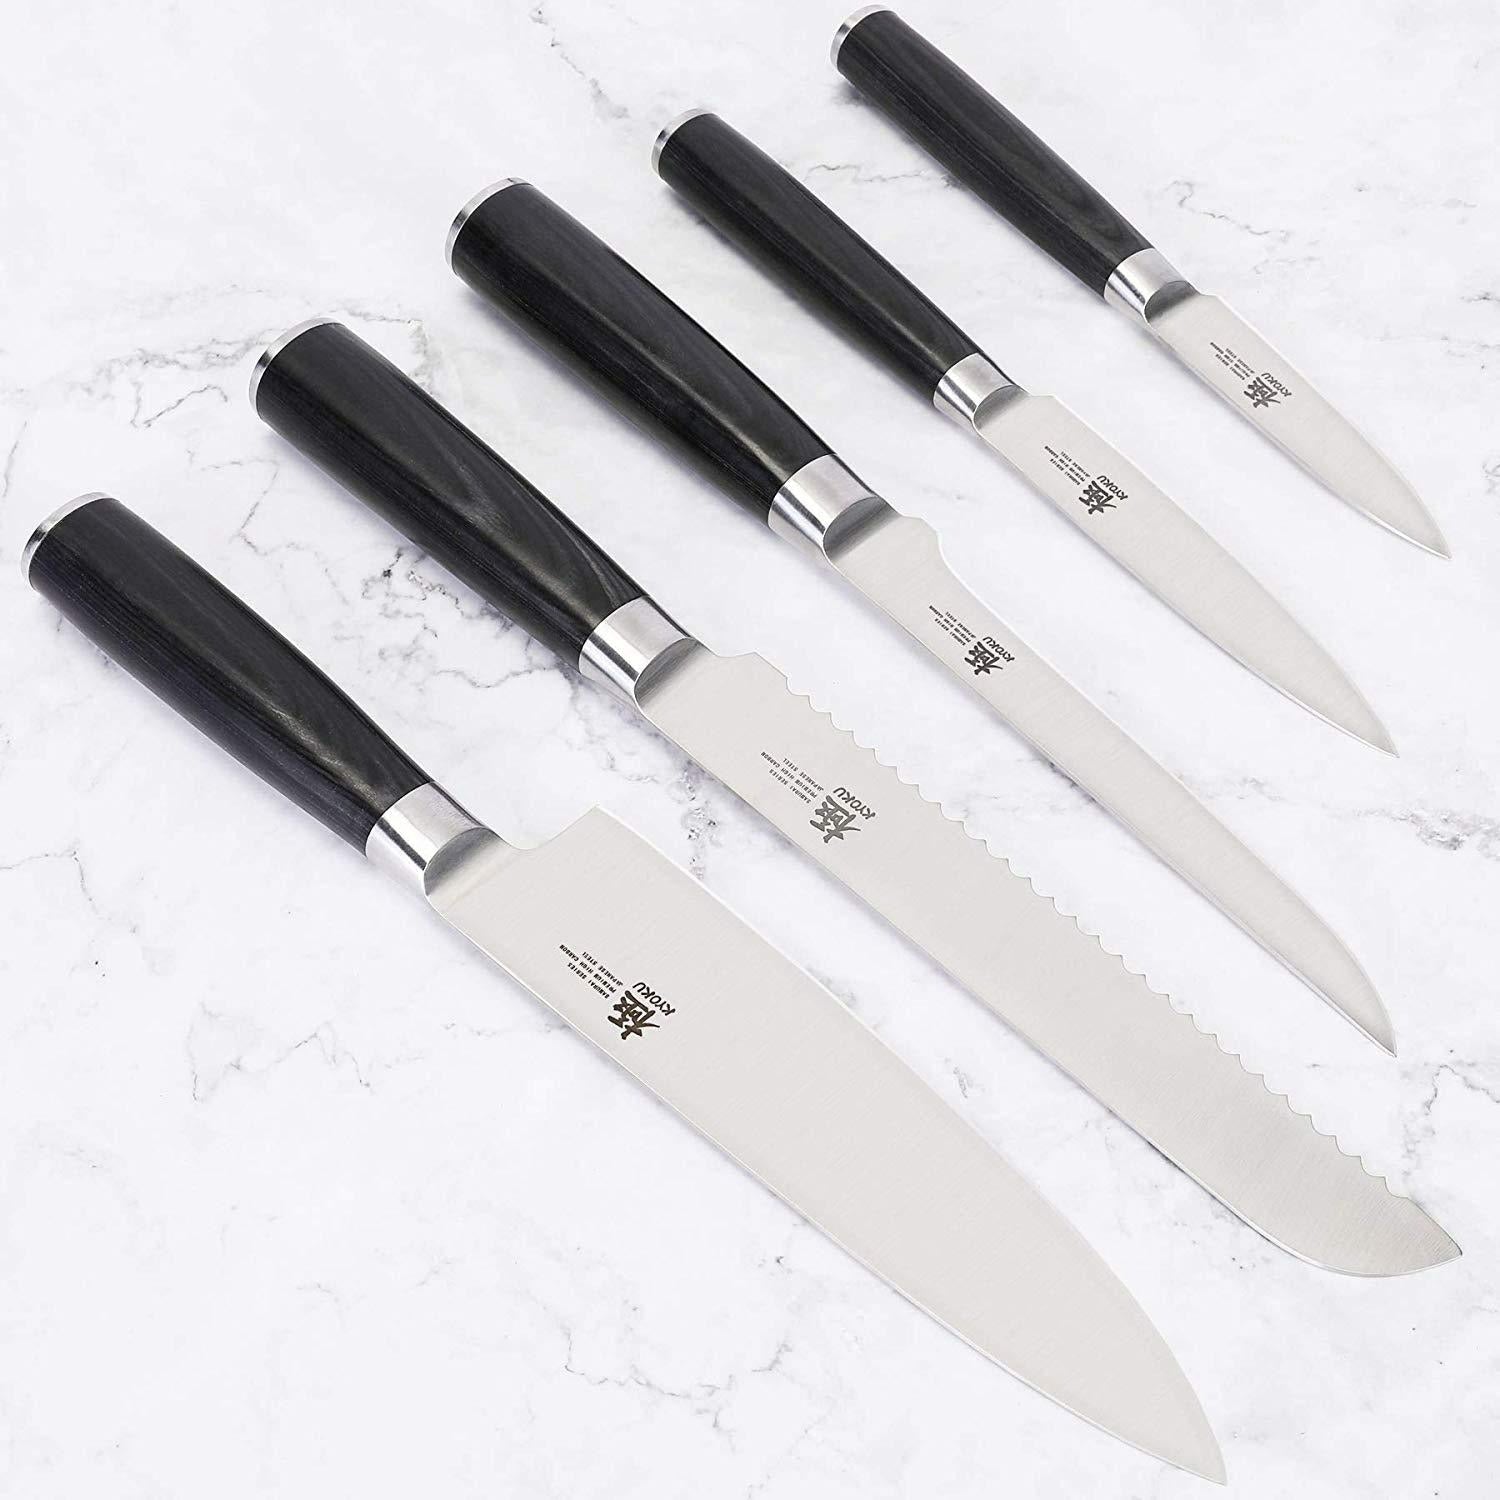 Kyoku 5pc Japanese Kitchen Knife Block Set  Great for a Home Kitchen –  Kyoku Knives